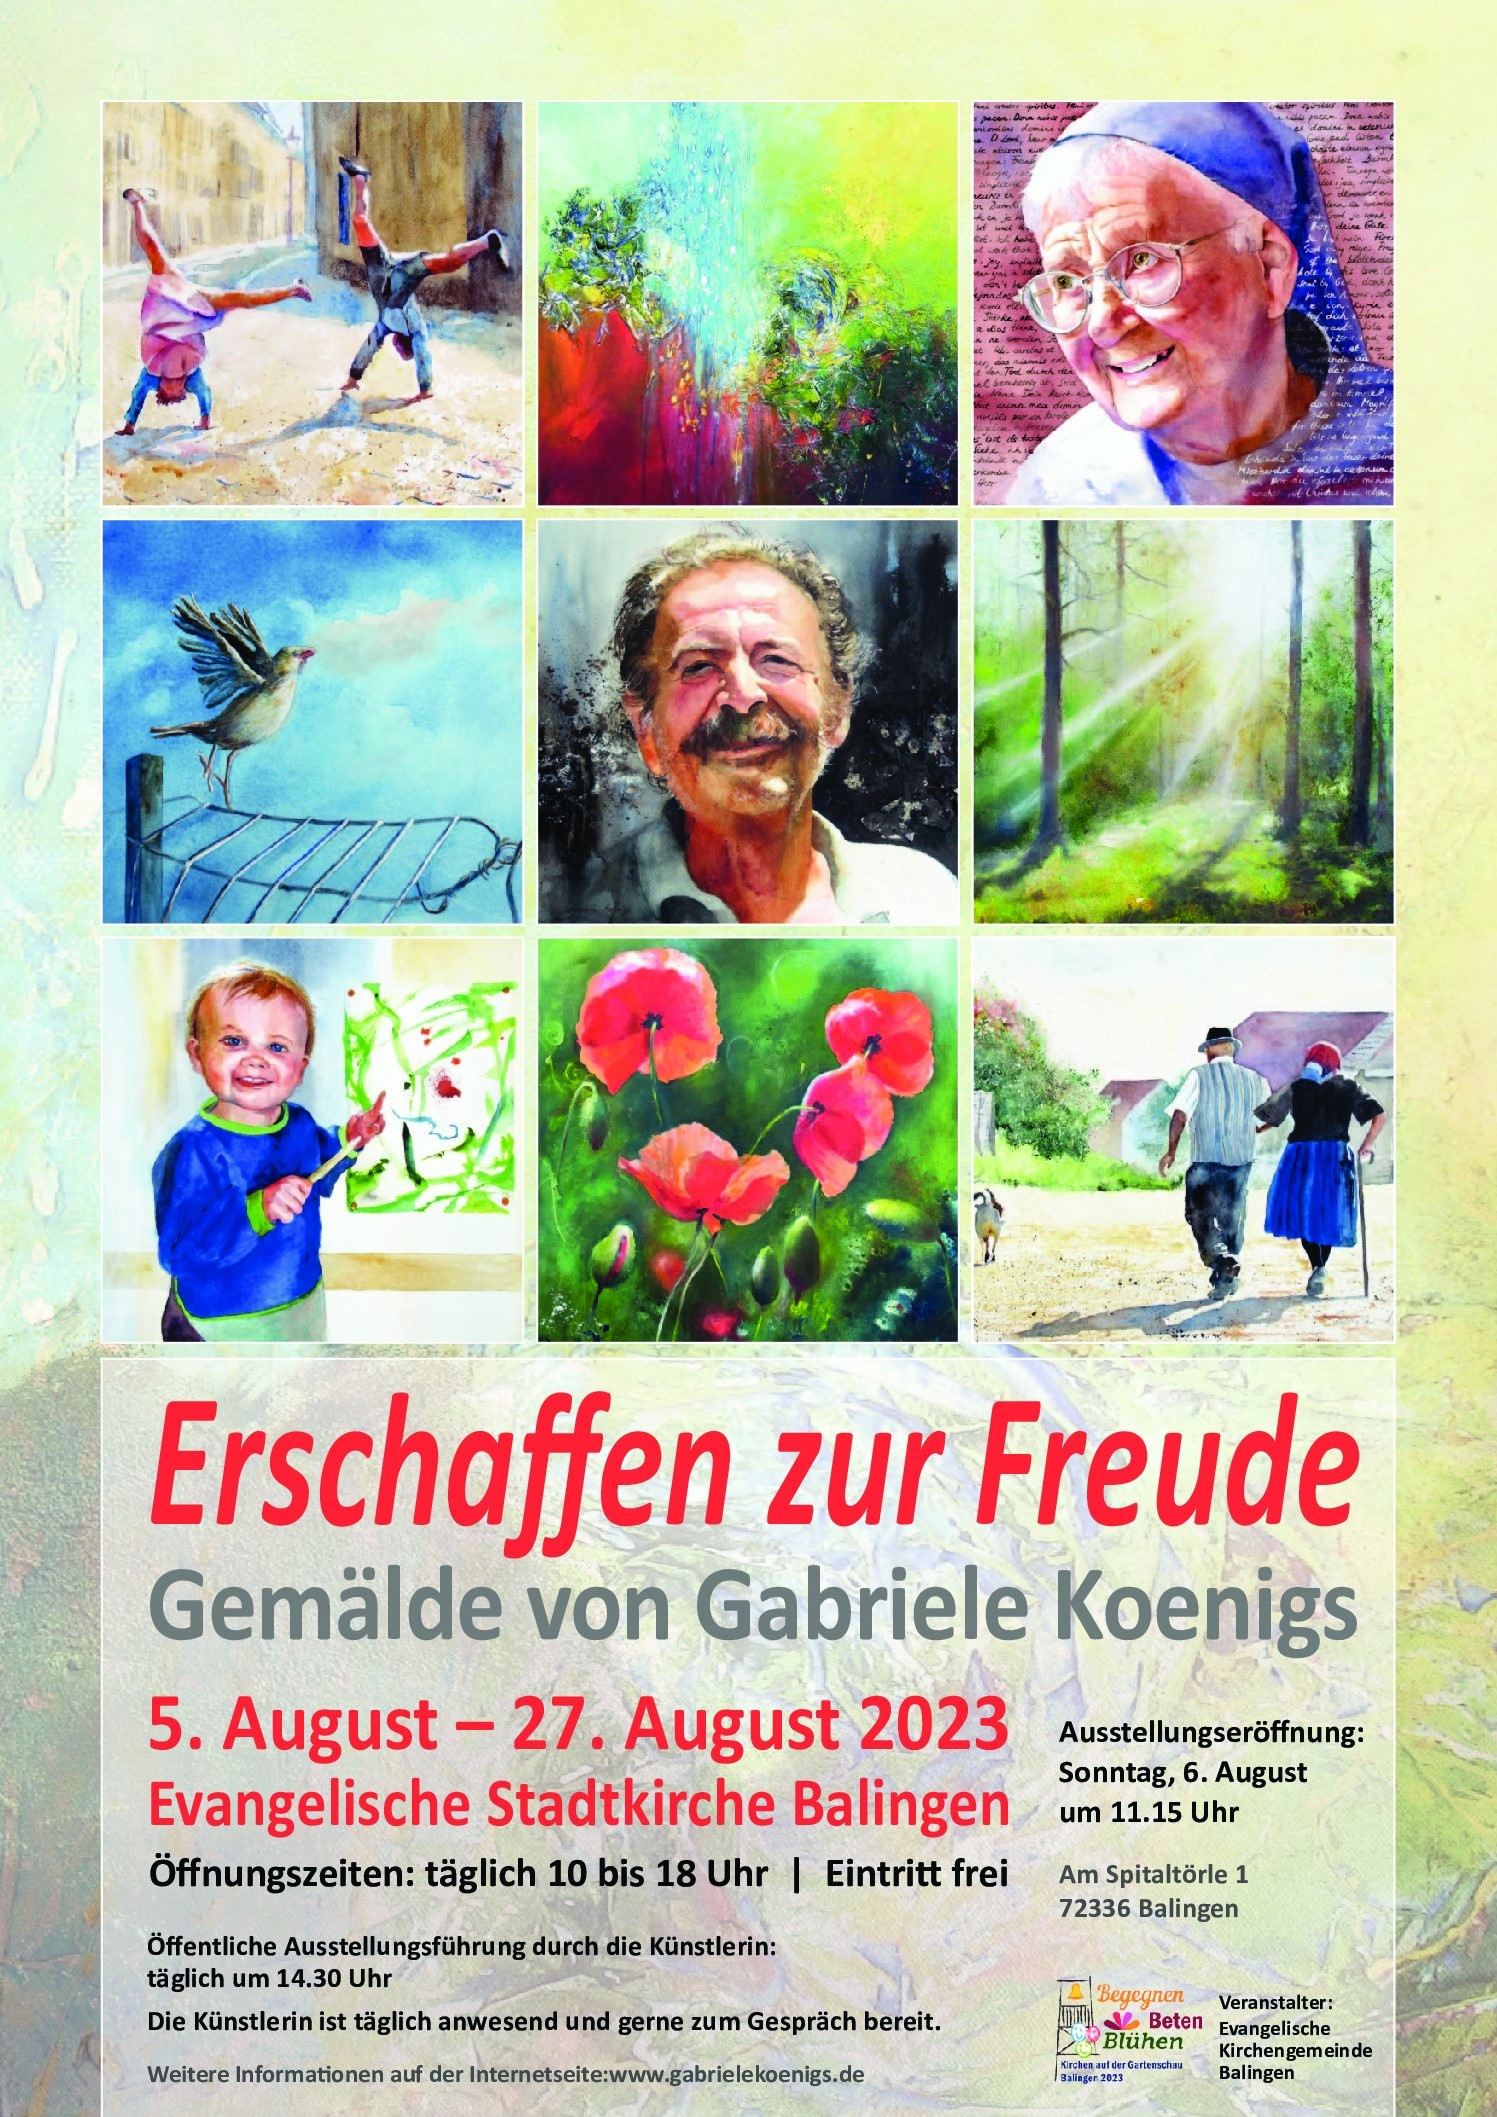 Ausstellung in der Stadtkirche: "Erschaffen zur Freude" Gemälde von Gabriele Koenigs